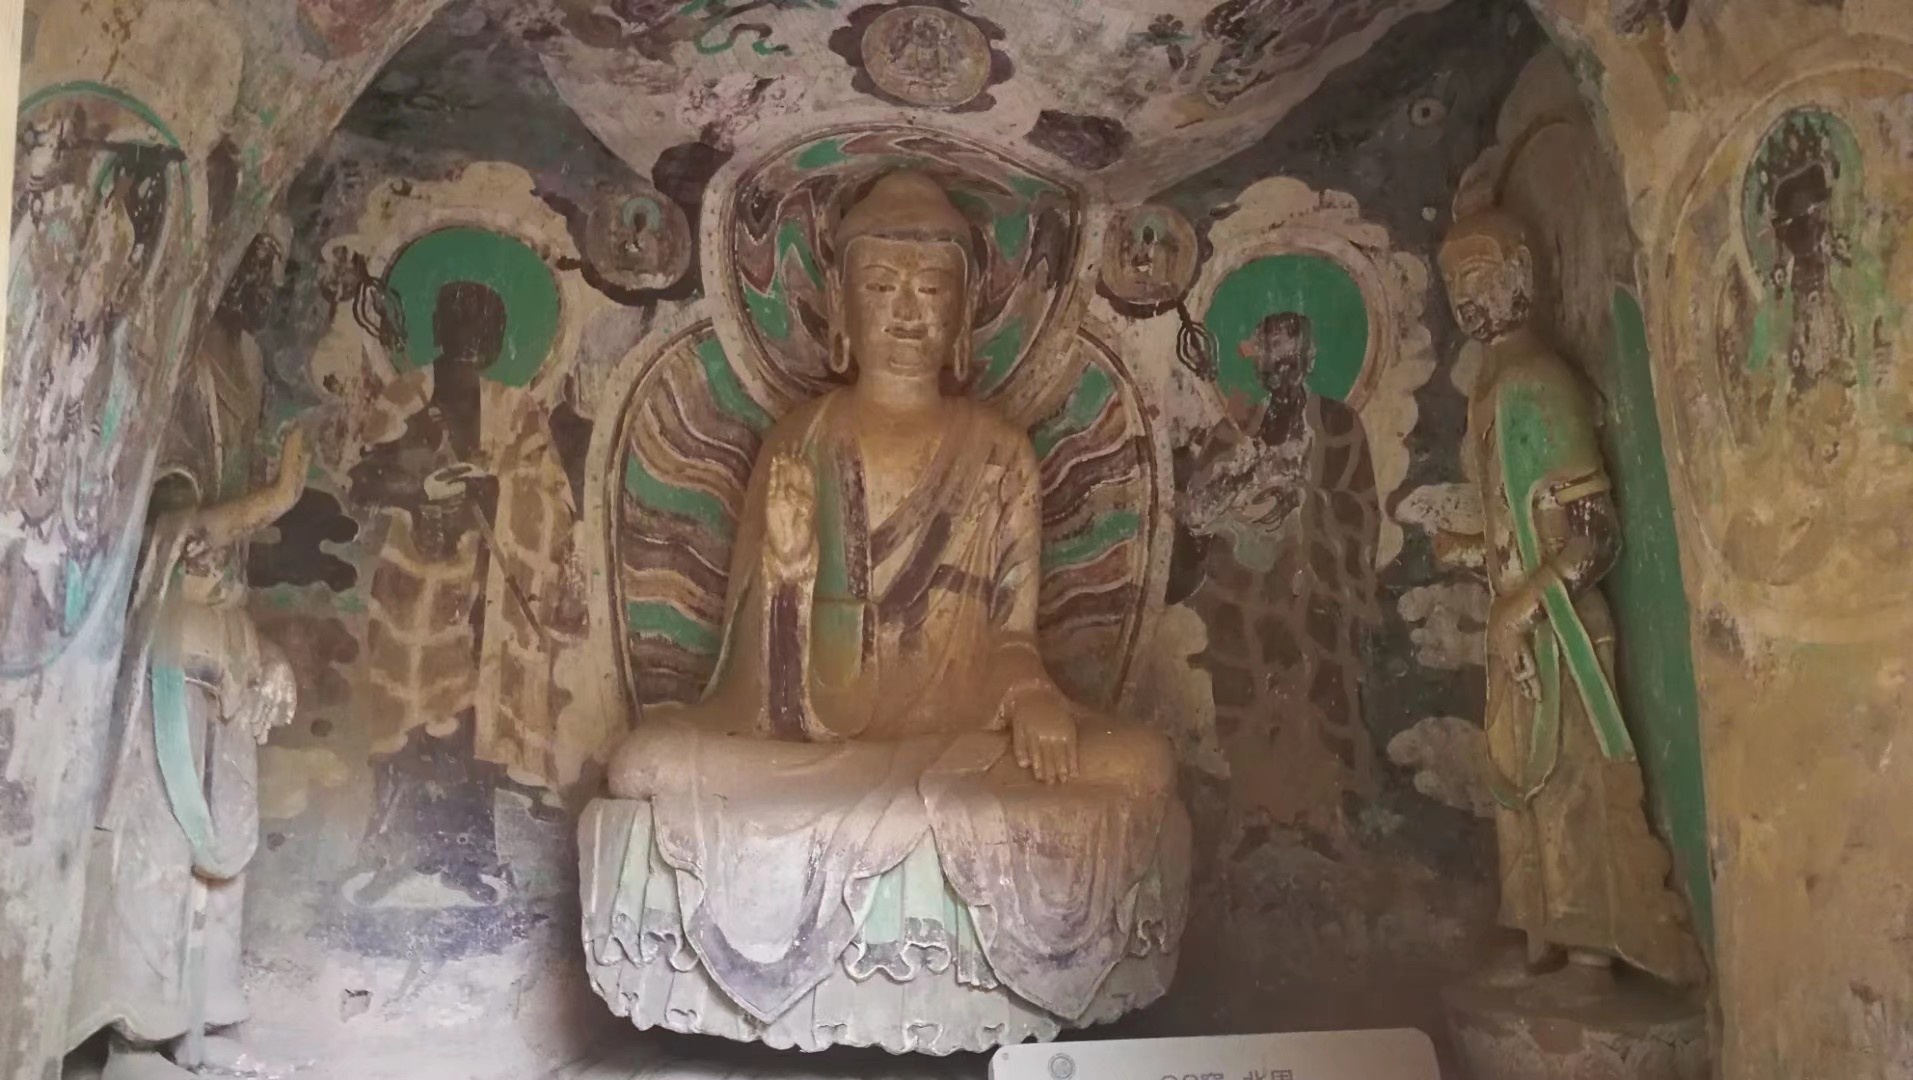 炳灵寺石窟位于甘肃省永靖县-是中国著名的石窟之一